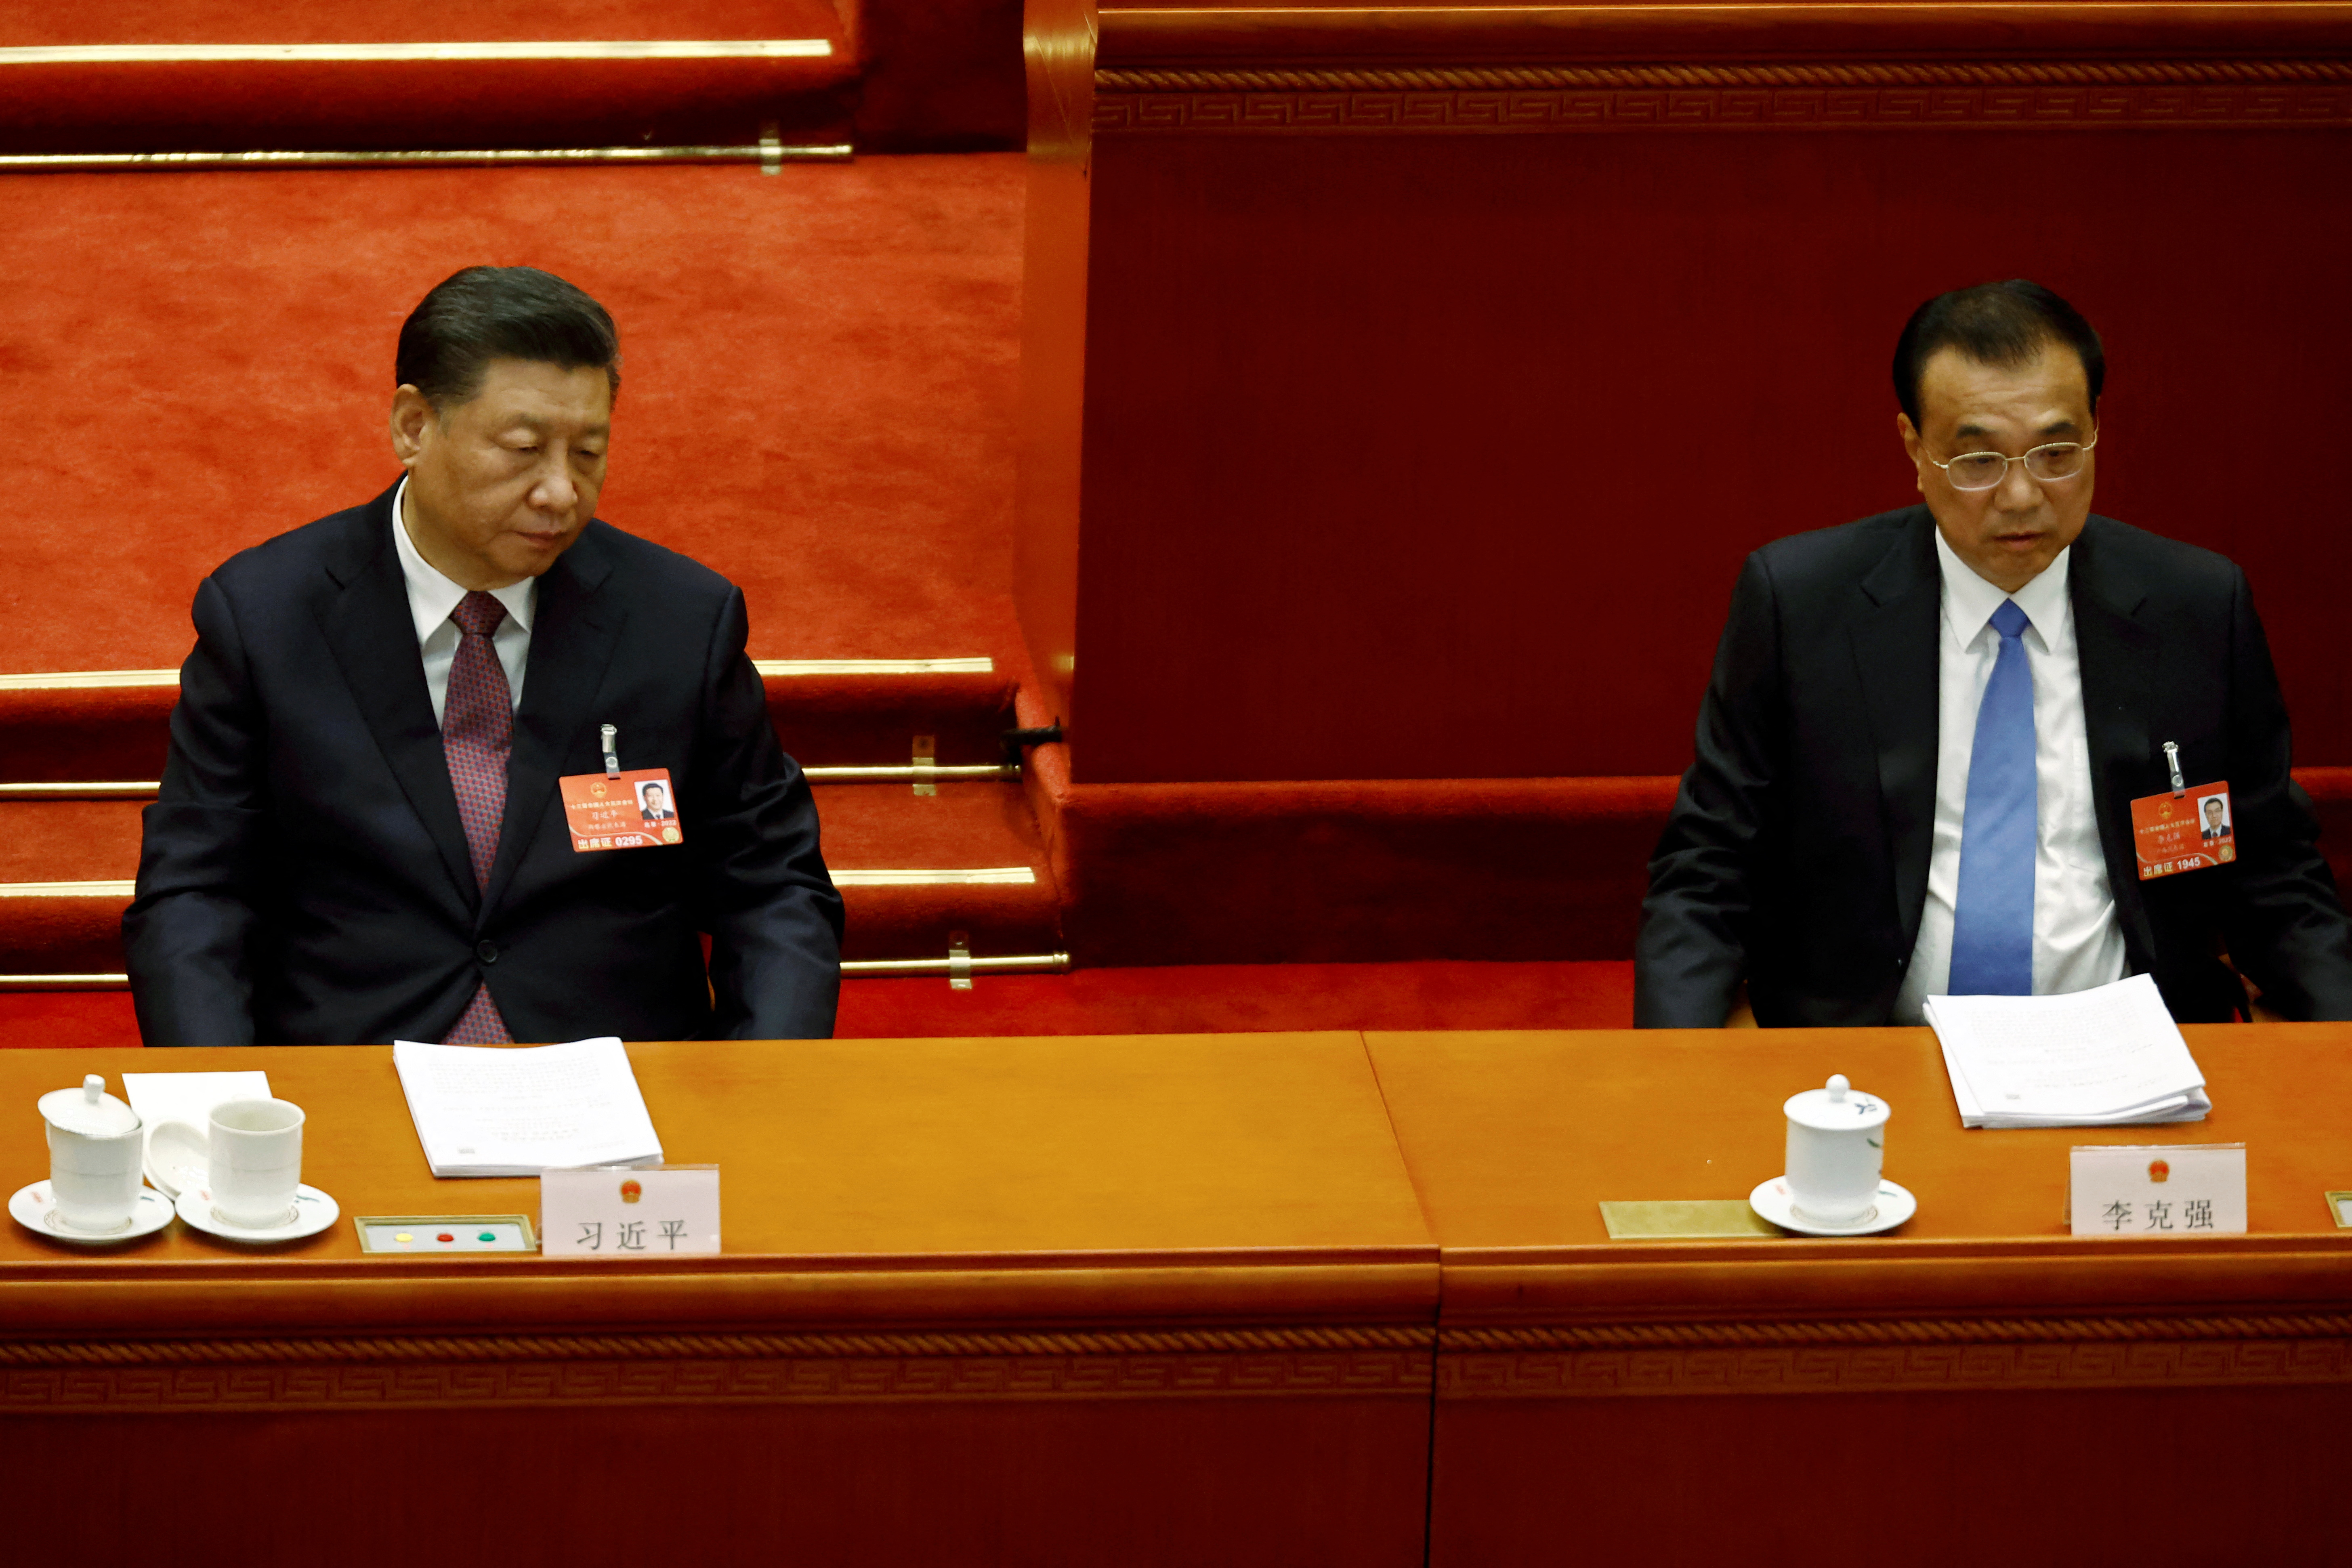 El jefe del régimen chino Xi Jinping y el primer ministro Li Keqiang asisten a la segunda sesión plenaria de la Asamblea Popular Nacional (APN) en el Gran Salón del Pueblo en Beijing, China, el 8 de marzo pasado (Reuters)